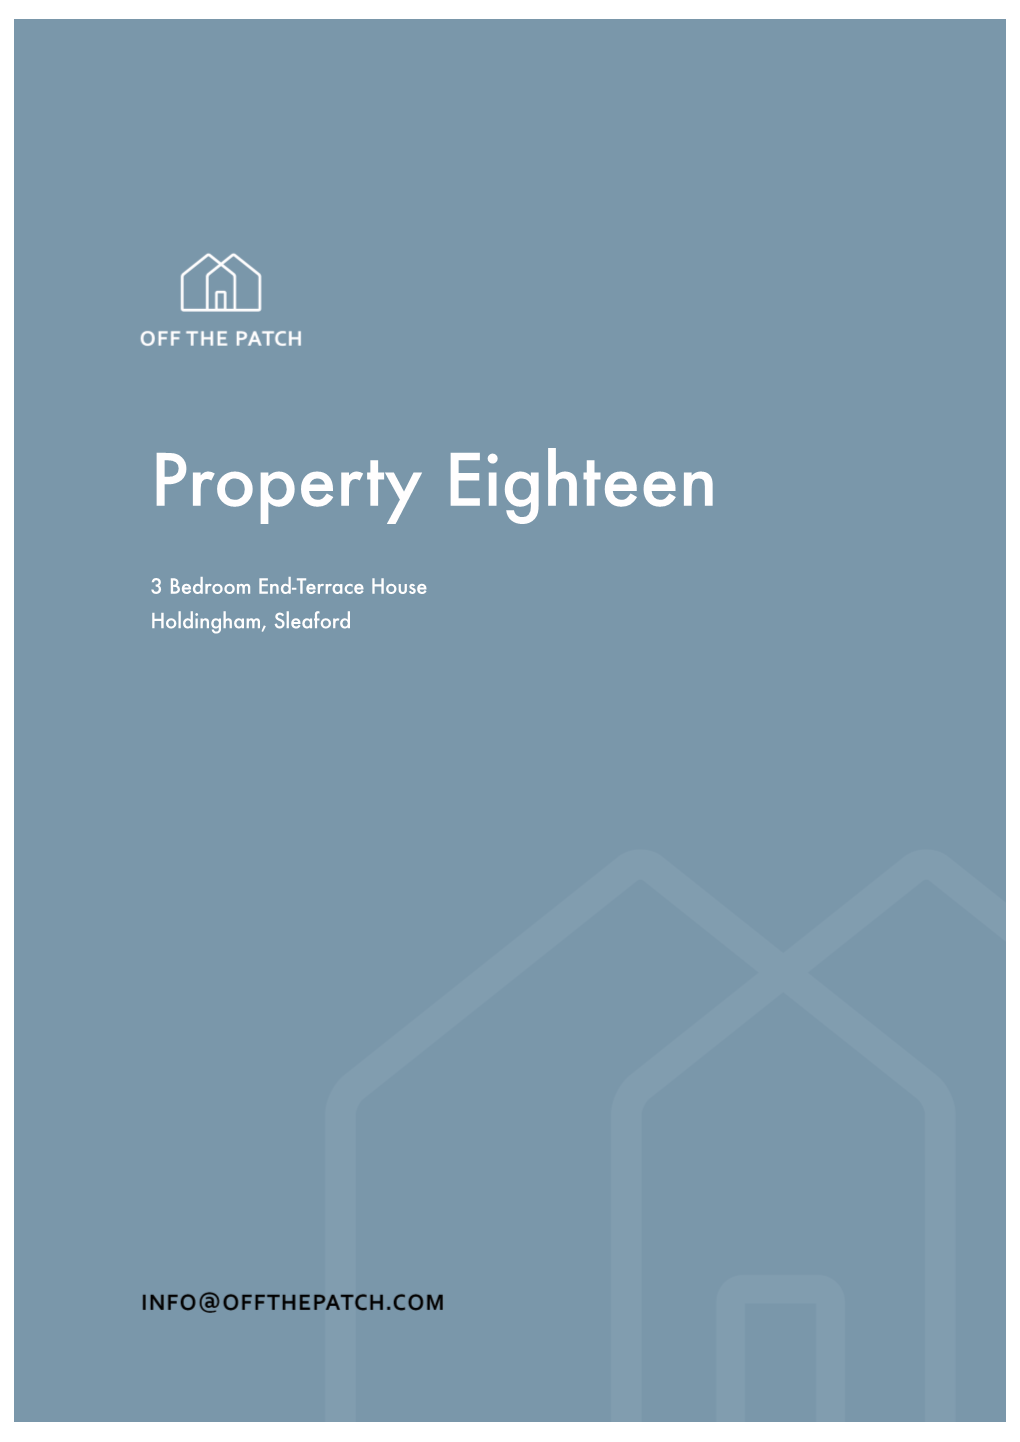 Property Eighteen Brochure Jess